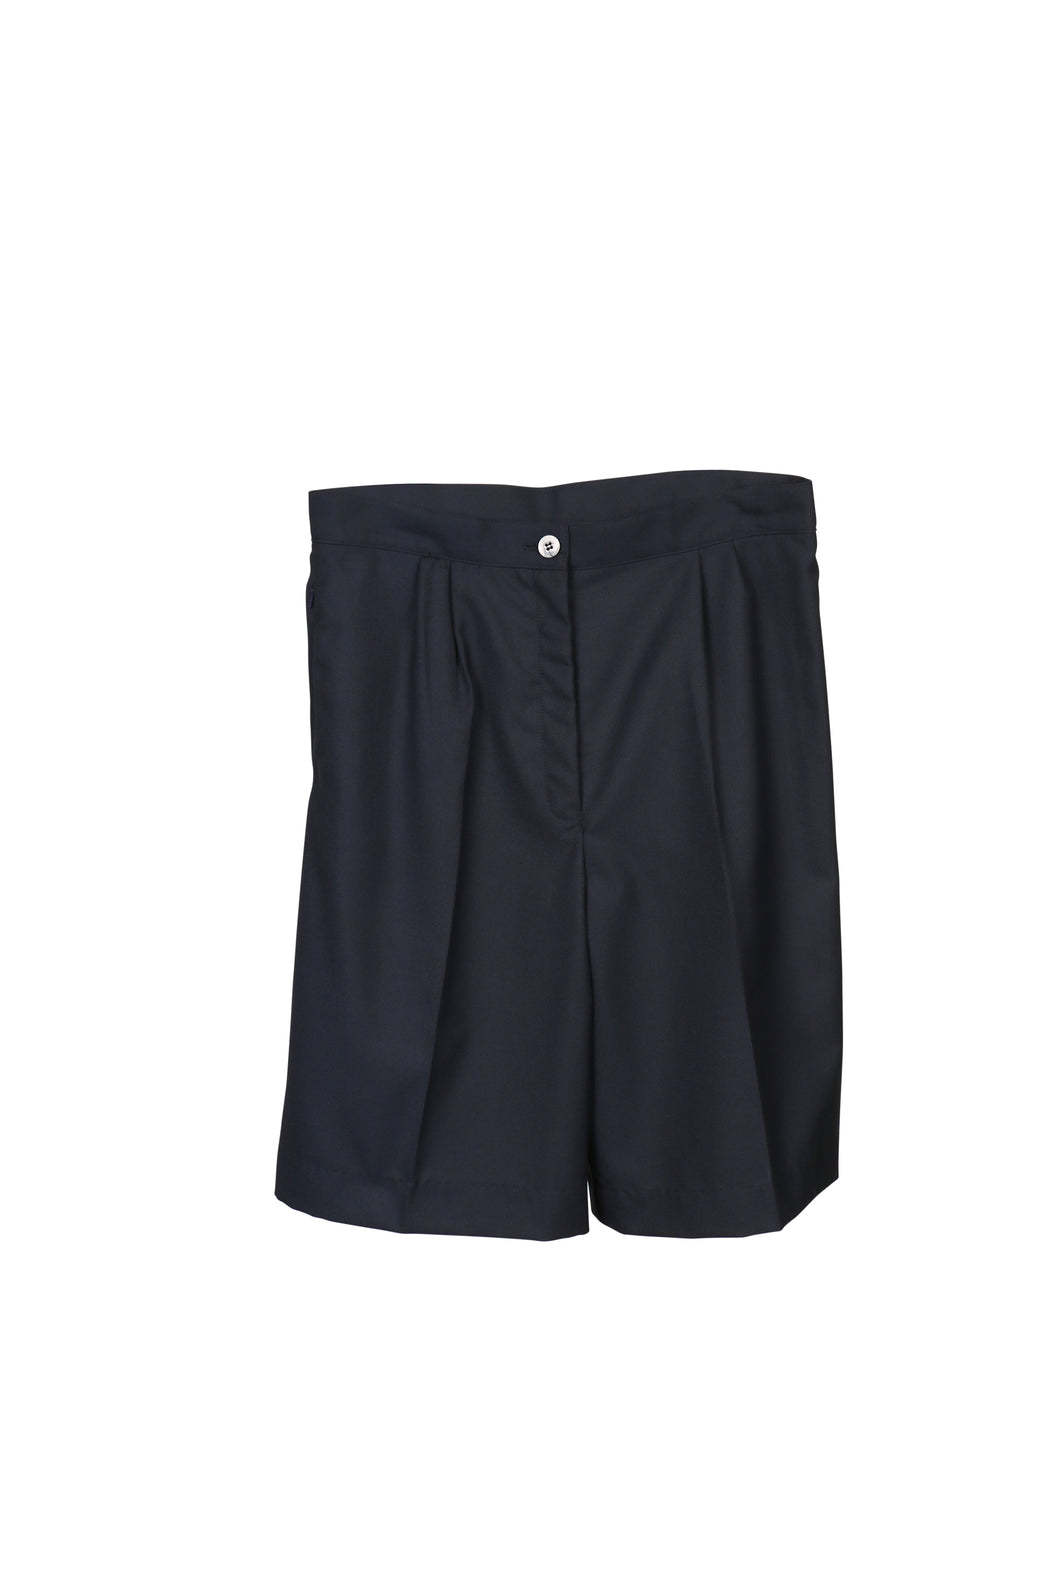 Navy Blue, City Shorts (Optional Item) - Girls (SKC)